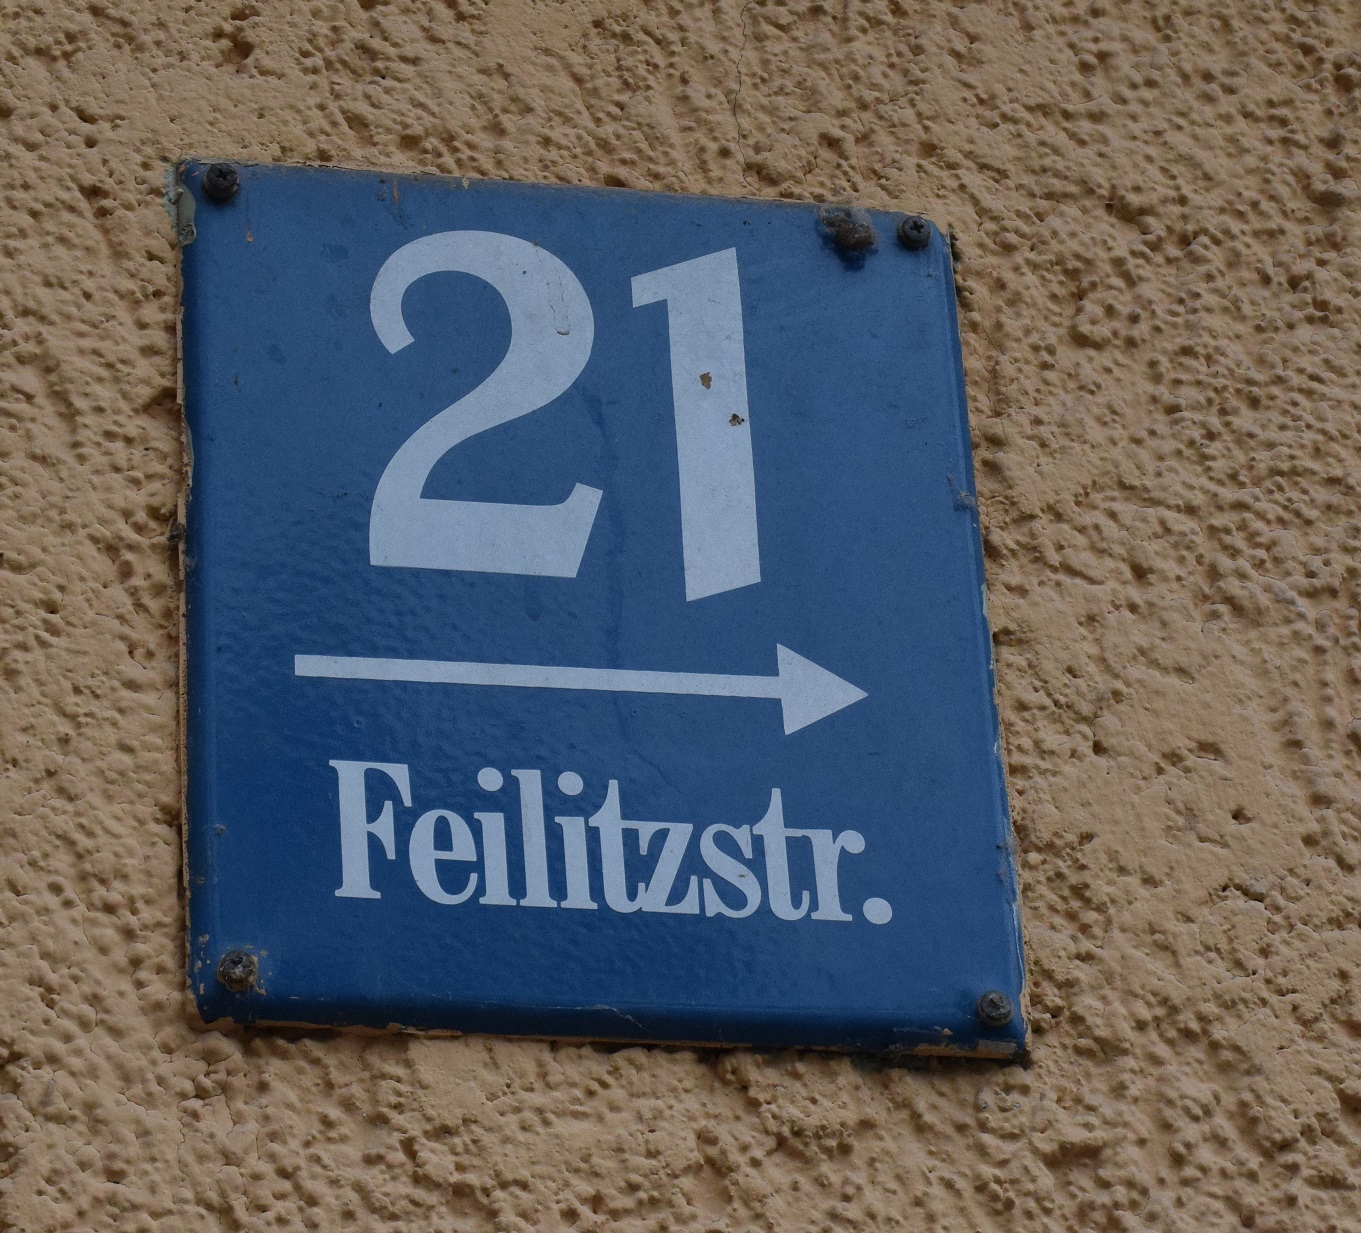 Feilitzstraße?